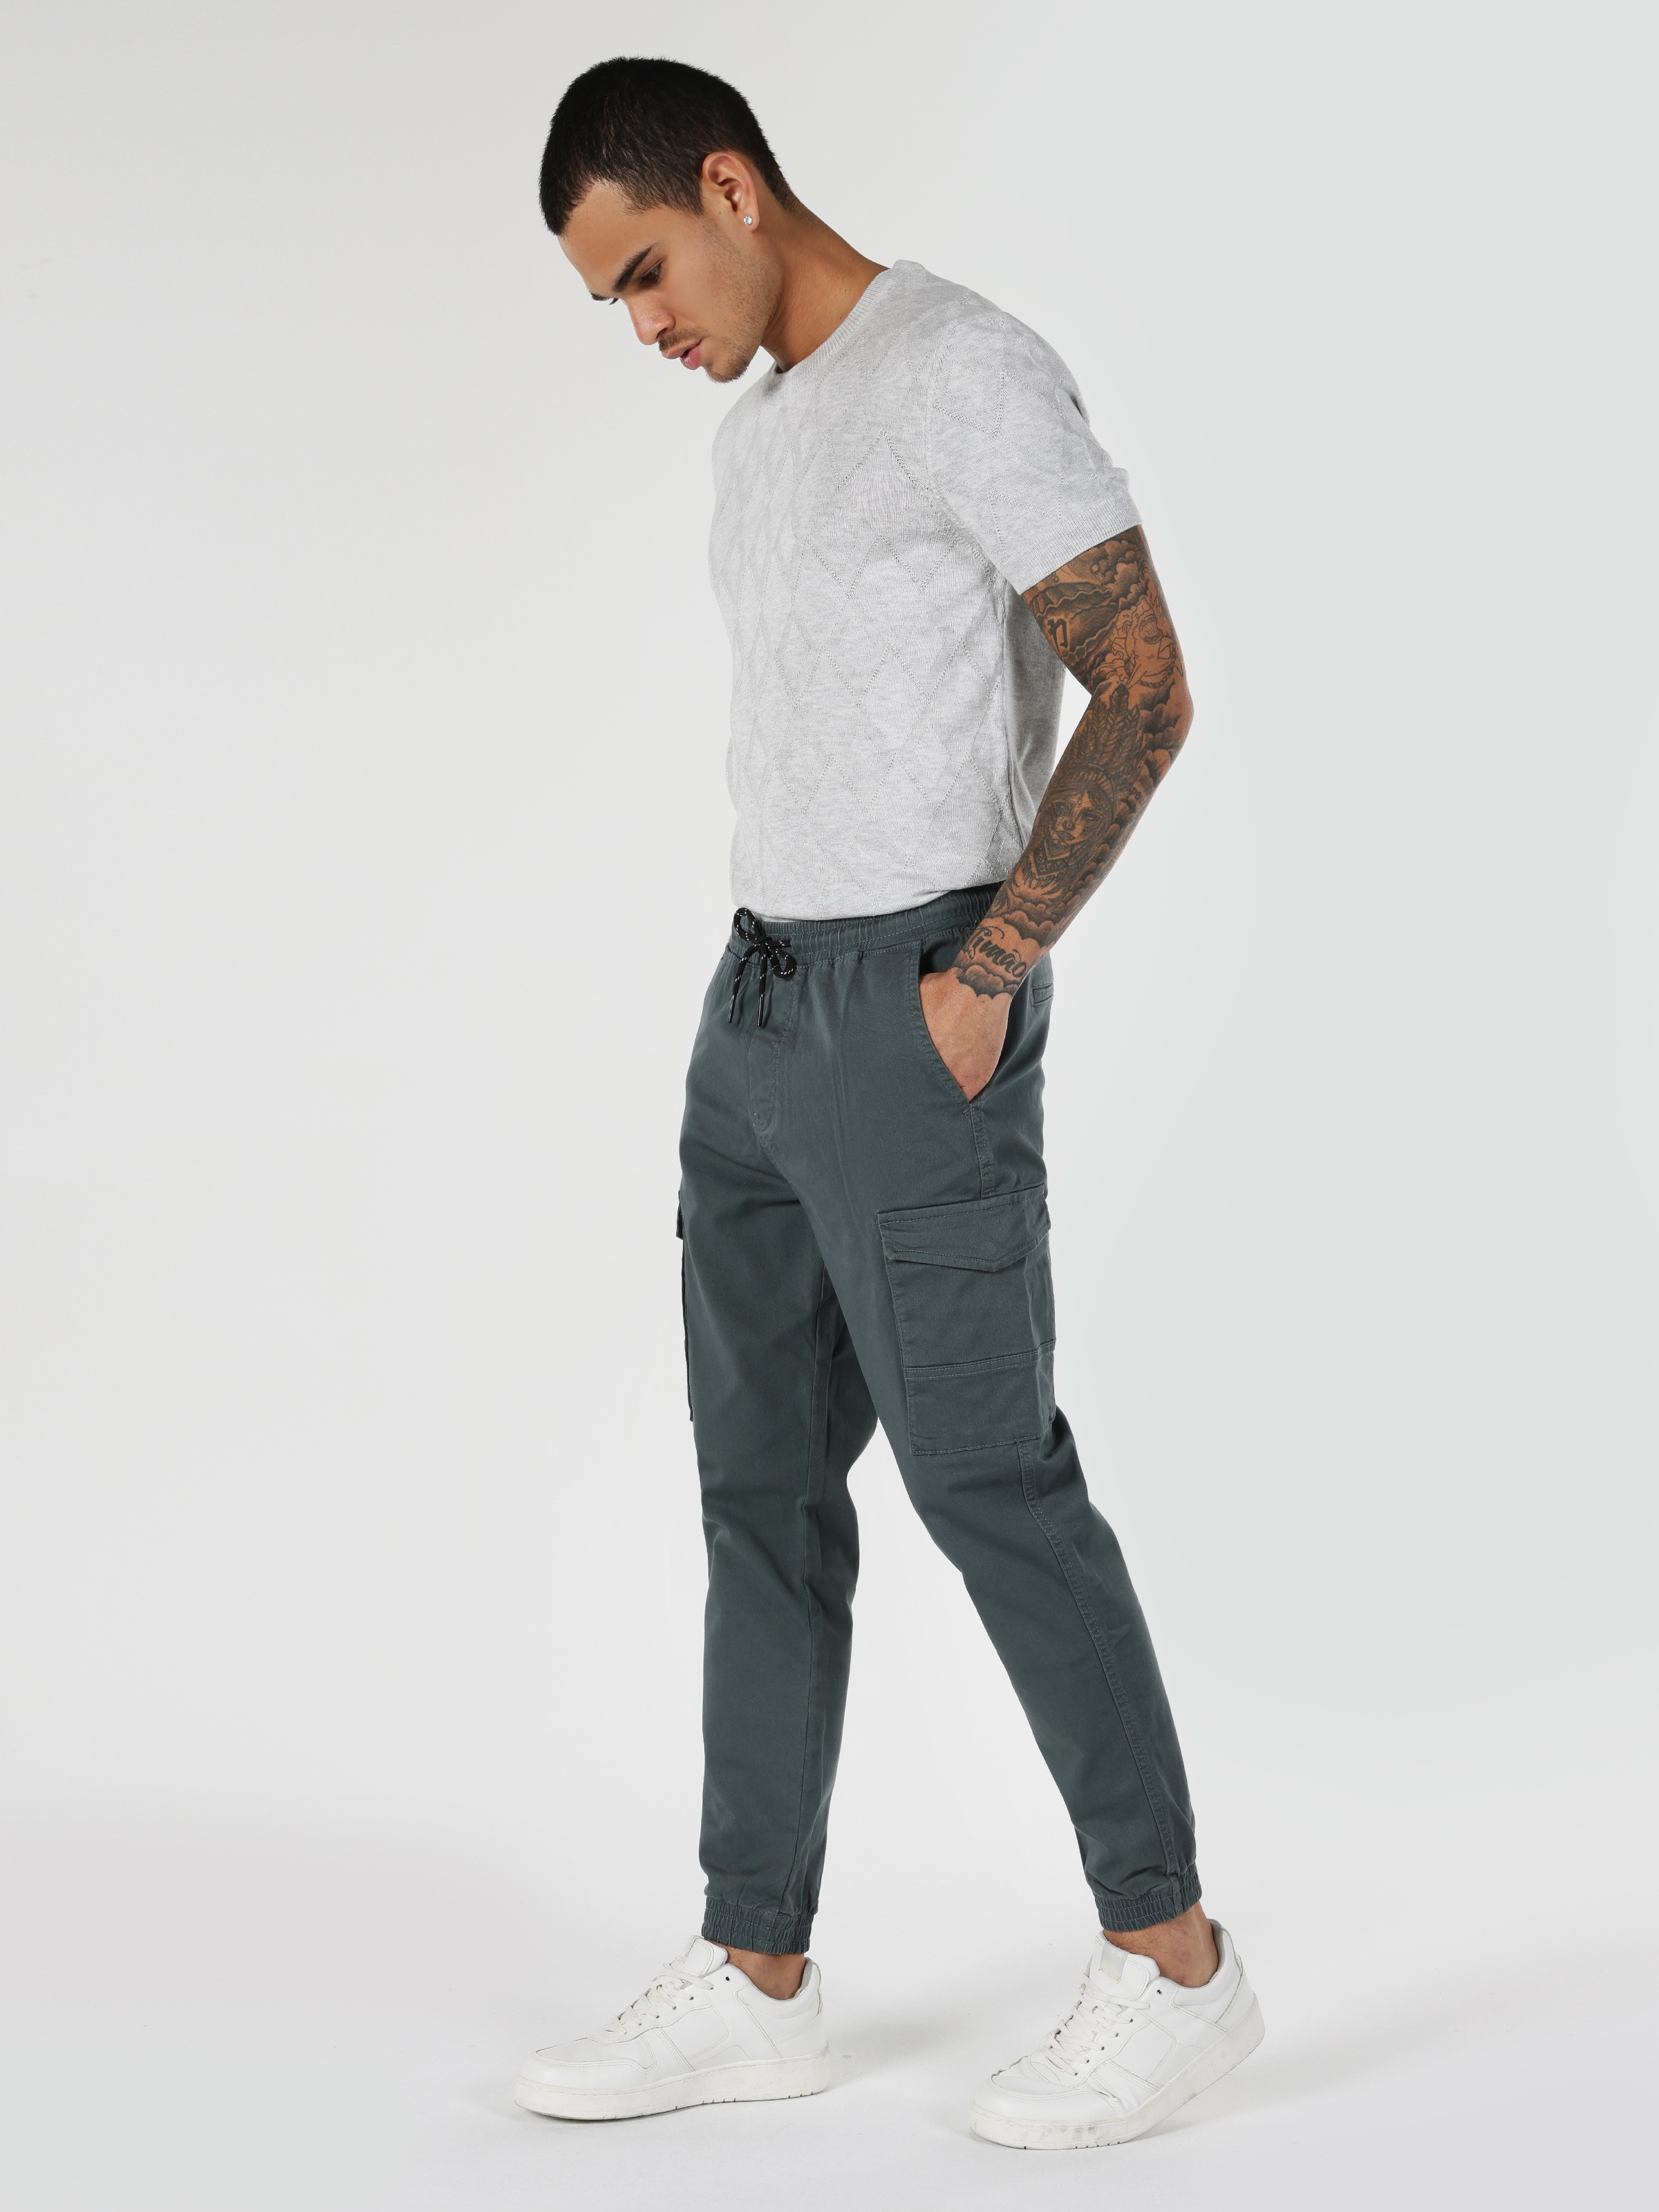 Afficher les détails de Pantalon Homme Bleu Coupe Slim Taille Moyenne Poche Cargo Jambe Élastique